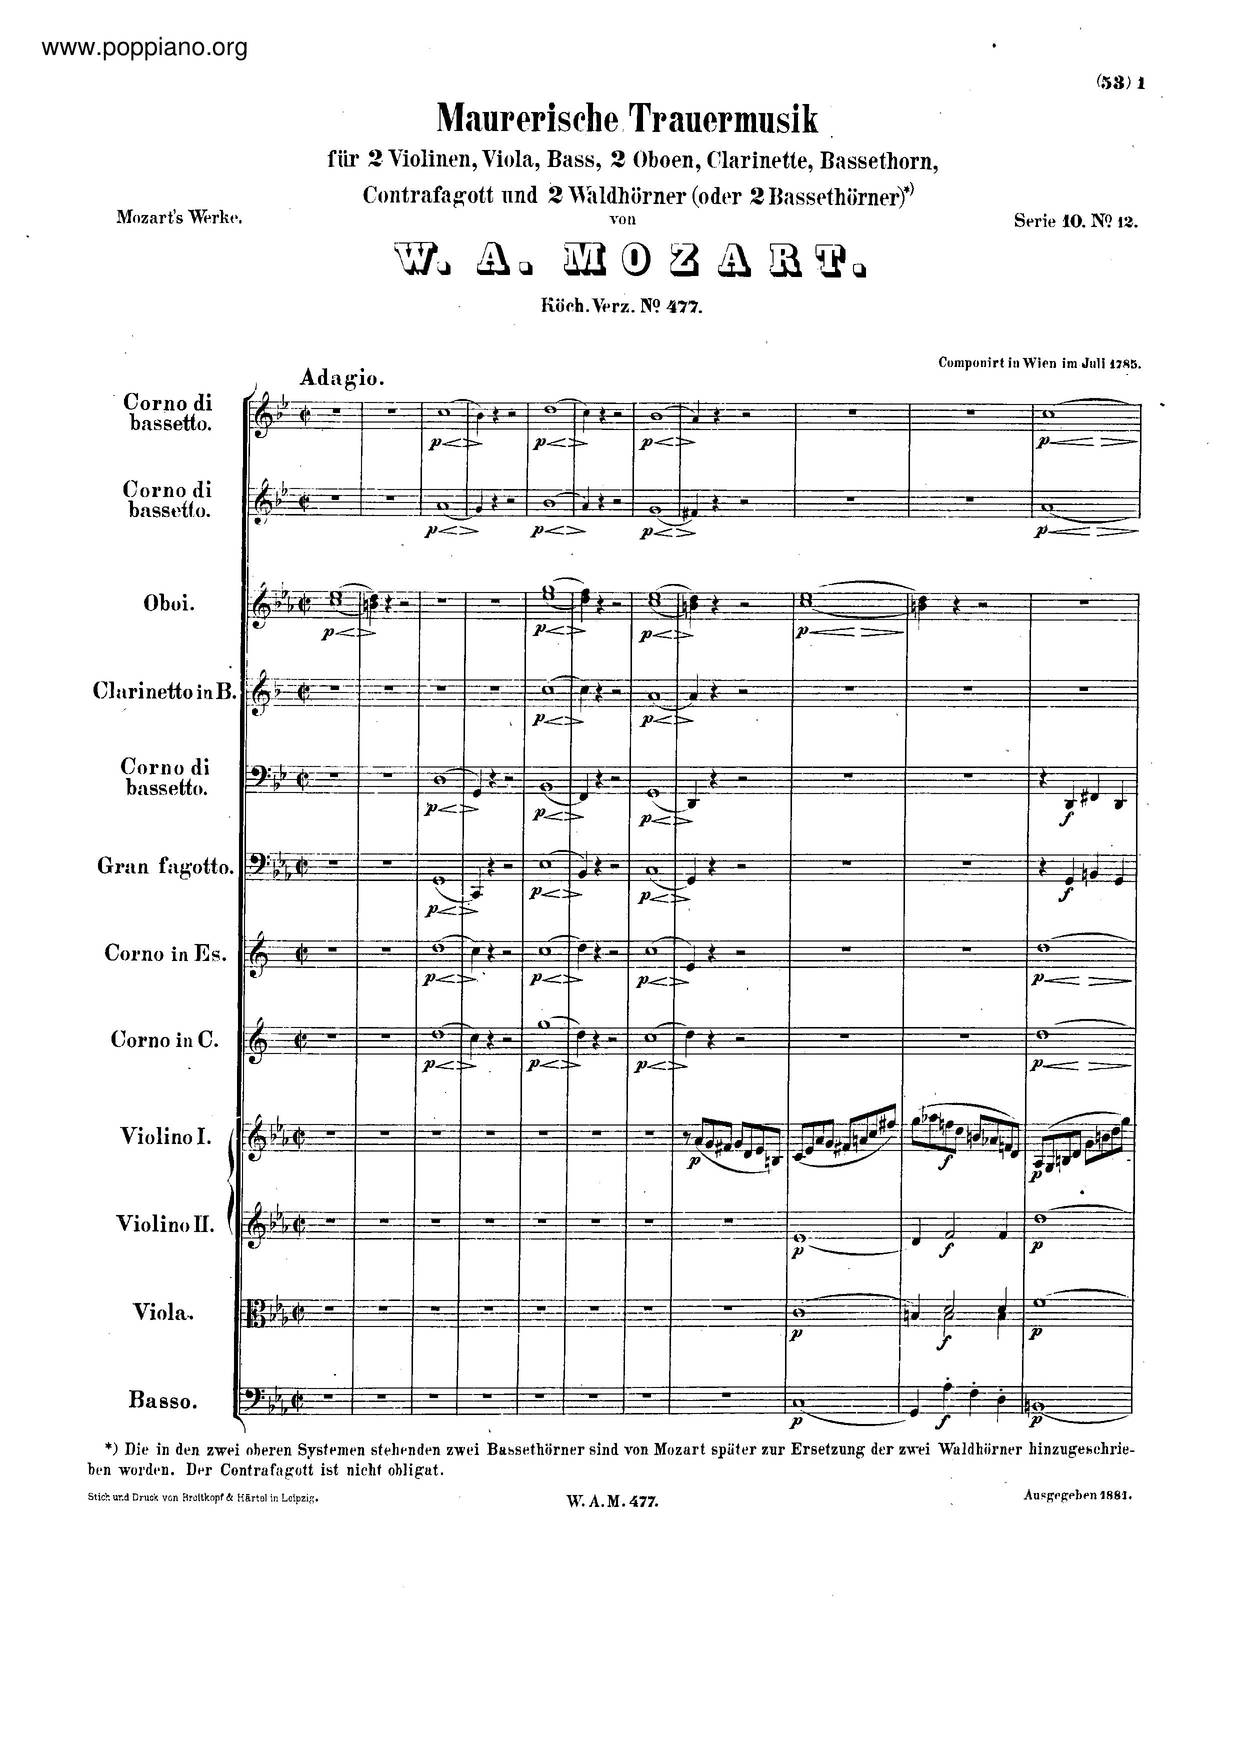 Maurerische Trauermusik, K. 477/479Aピアノ譜